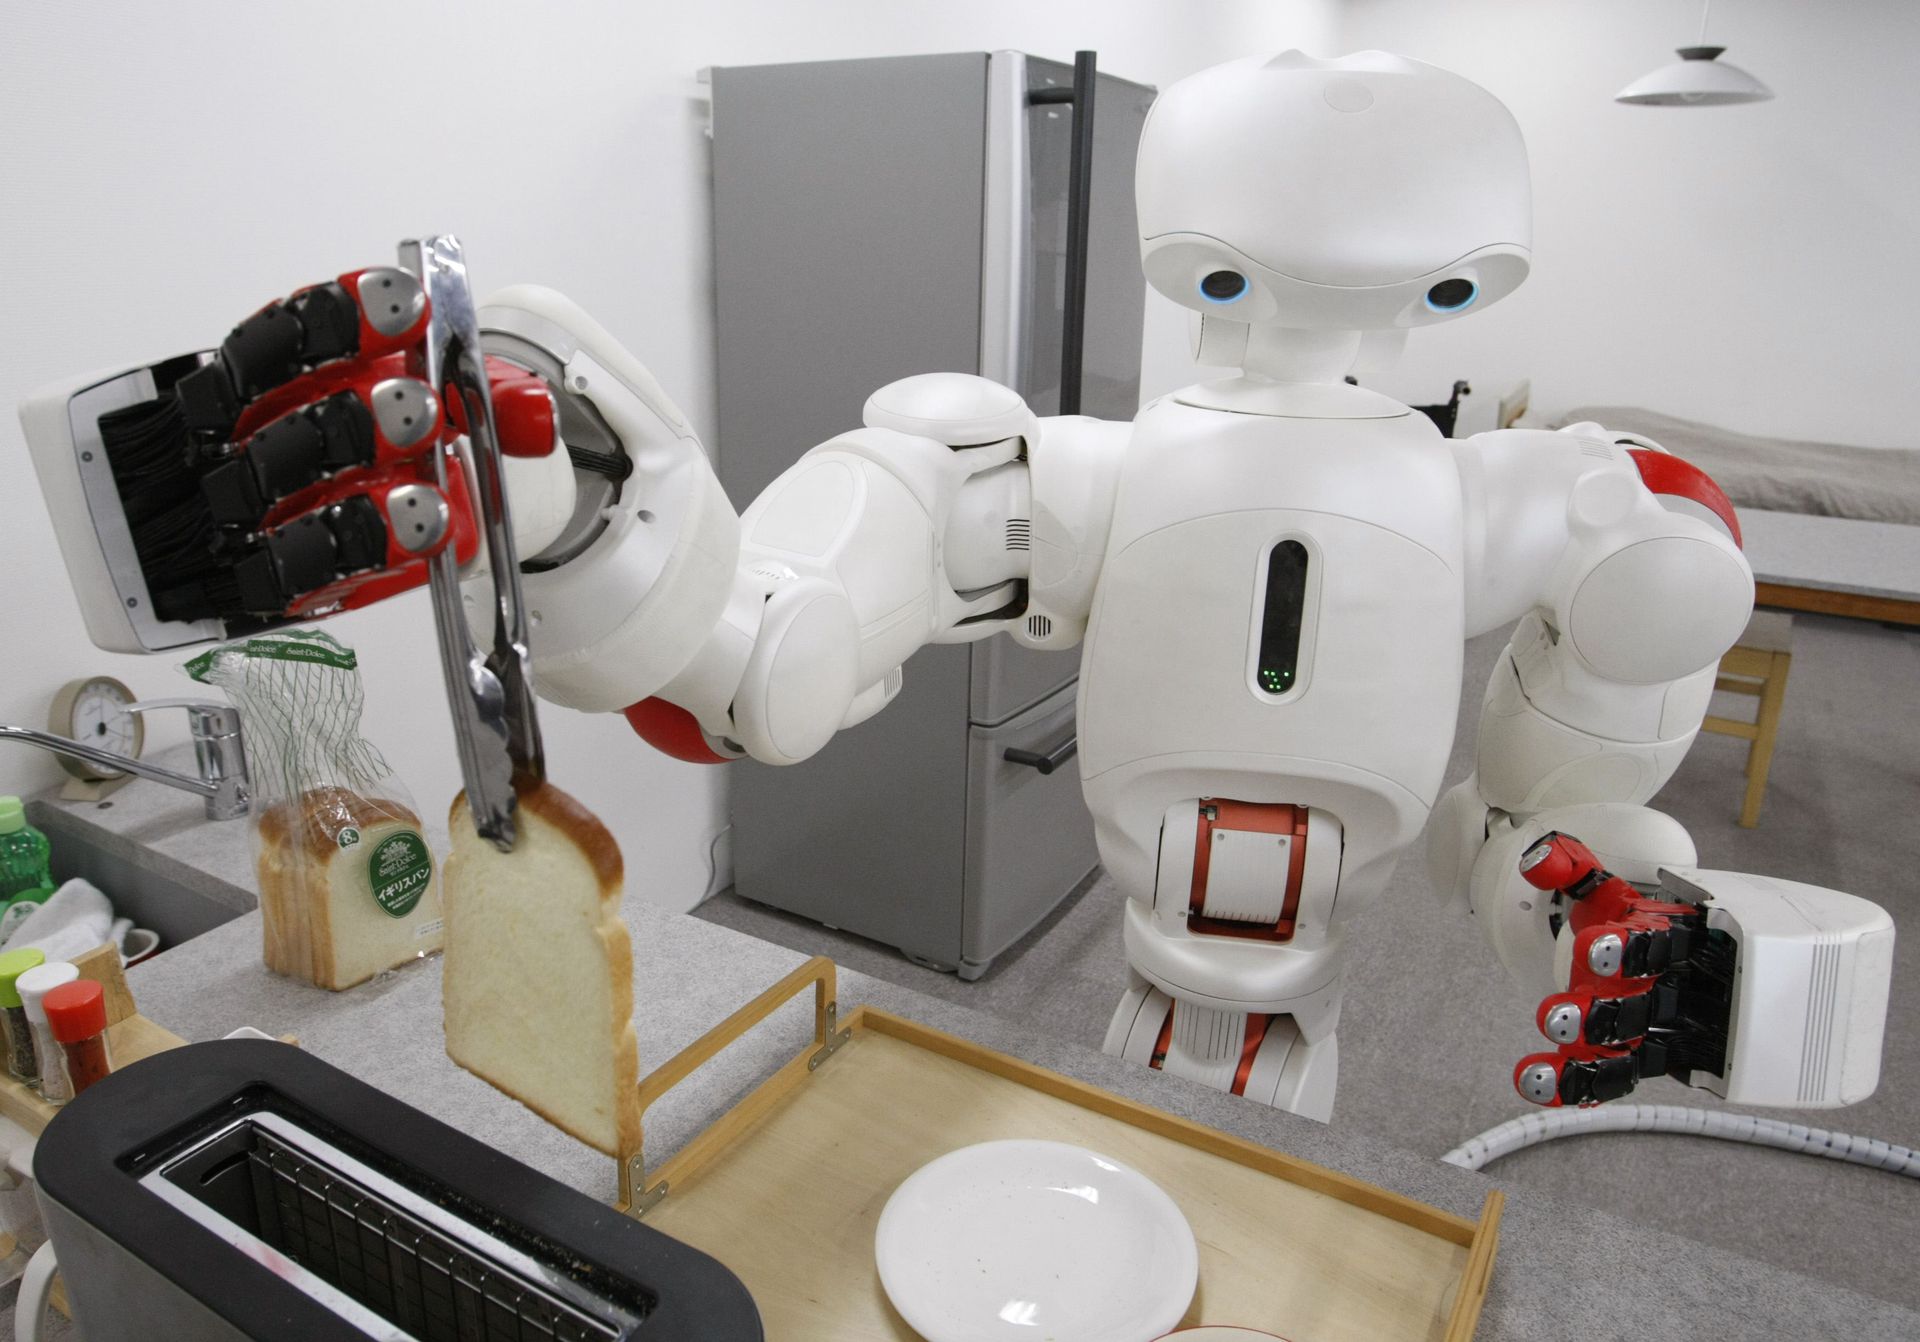 Роботы помощники в быту